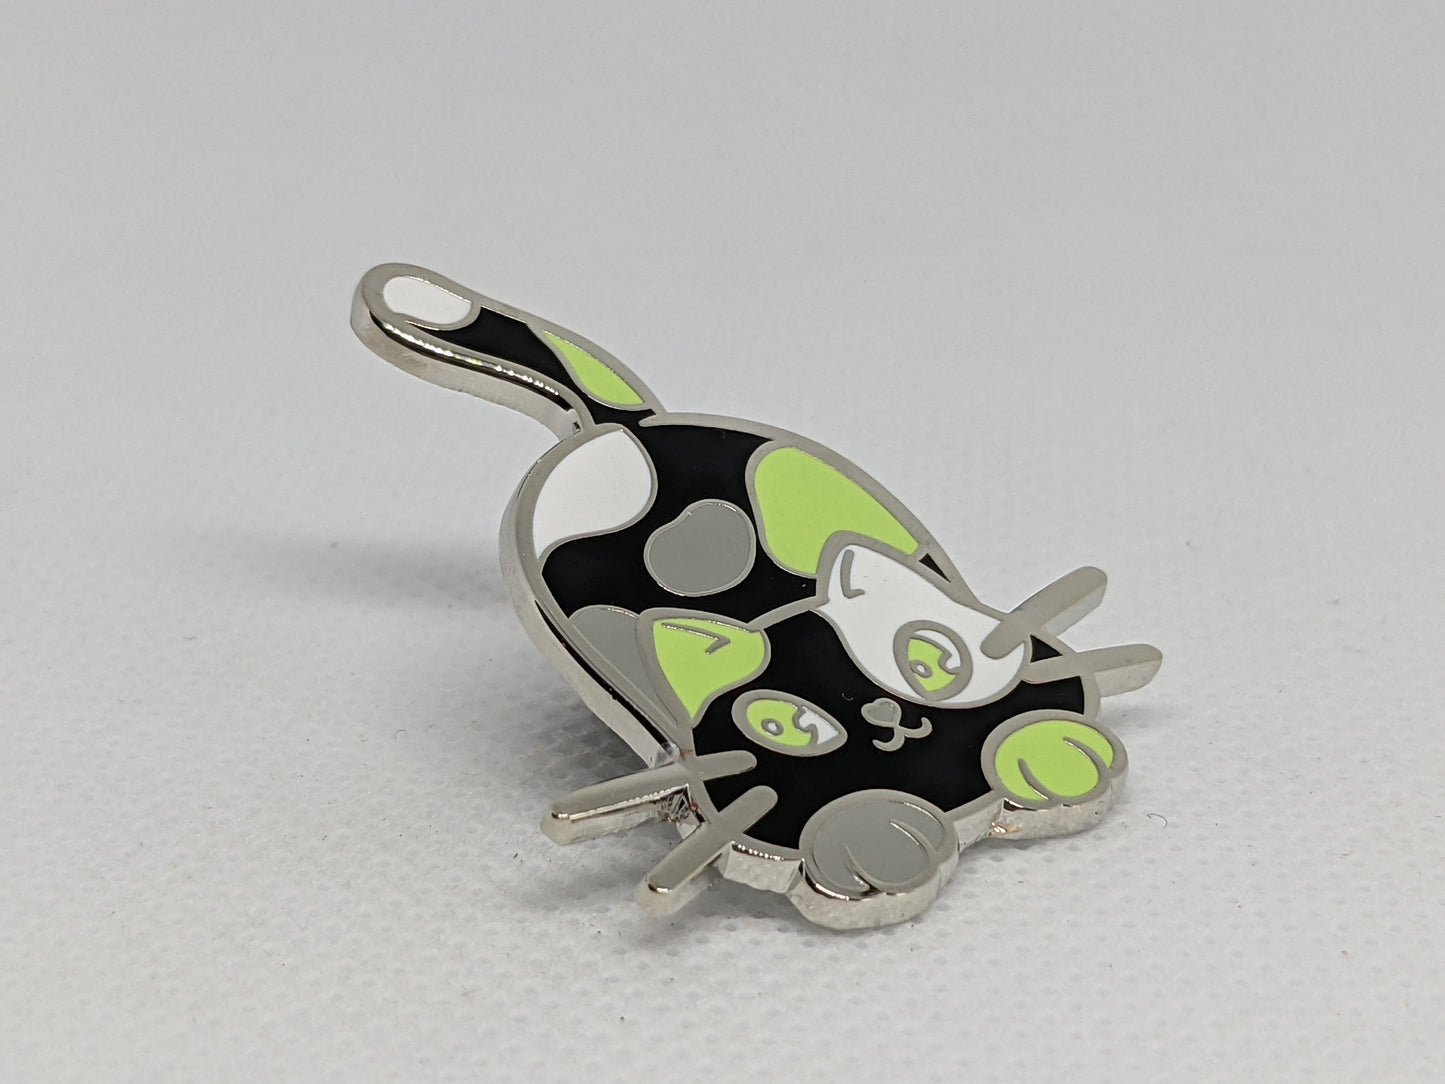 Agender Pin Purride Chibi Cat Hard Enamel Pin in Agender Pride Flag Colors | LGBTQ+ Subtle Agender Pride Pin